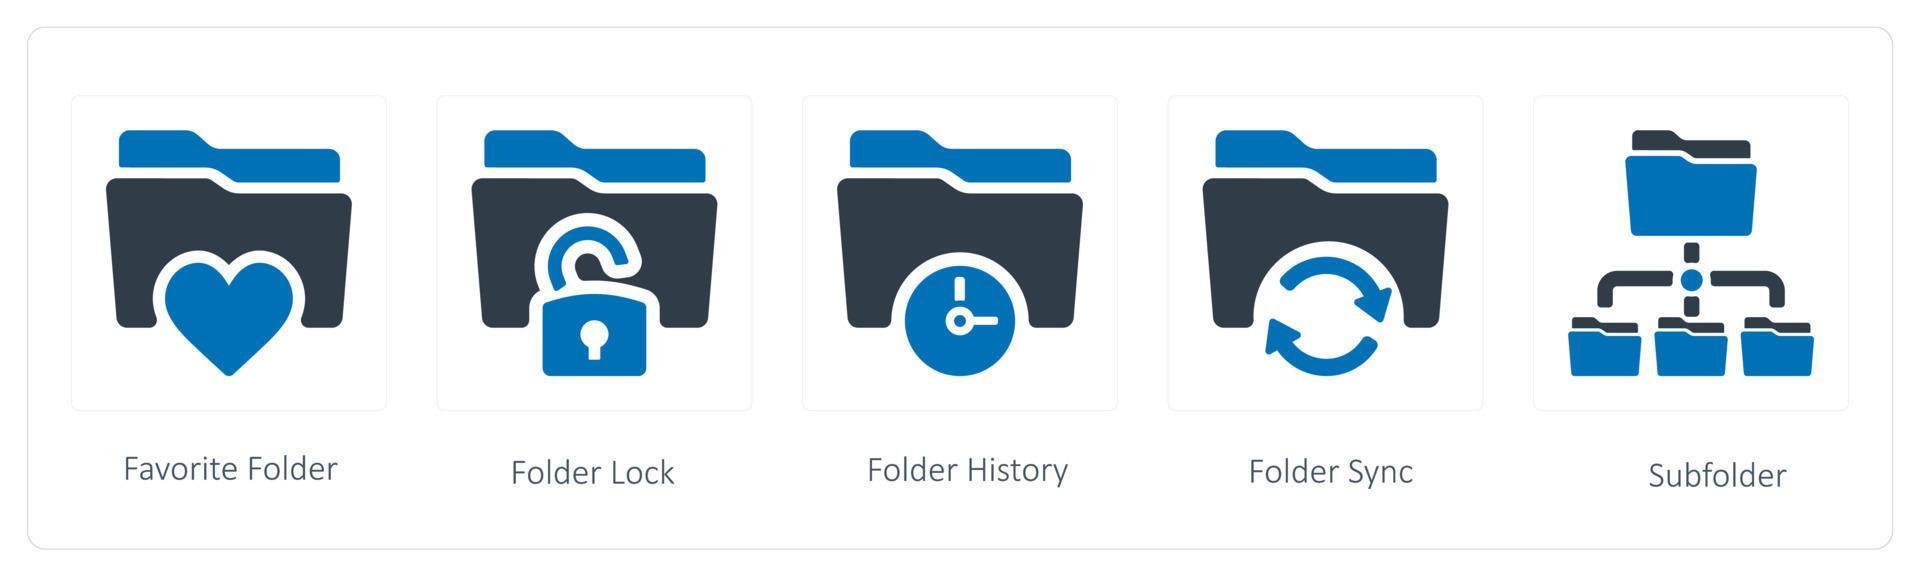 en uppsättning av 5 mapp ikoner sådan som favorit, mapp låsa och mapp historia vektor